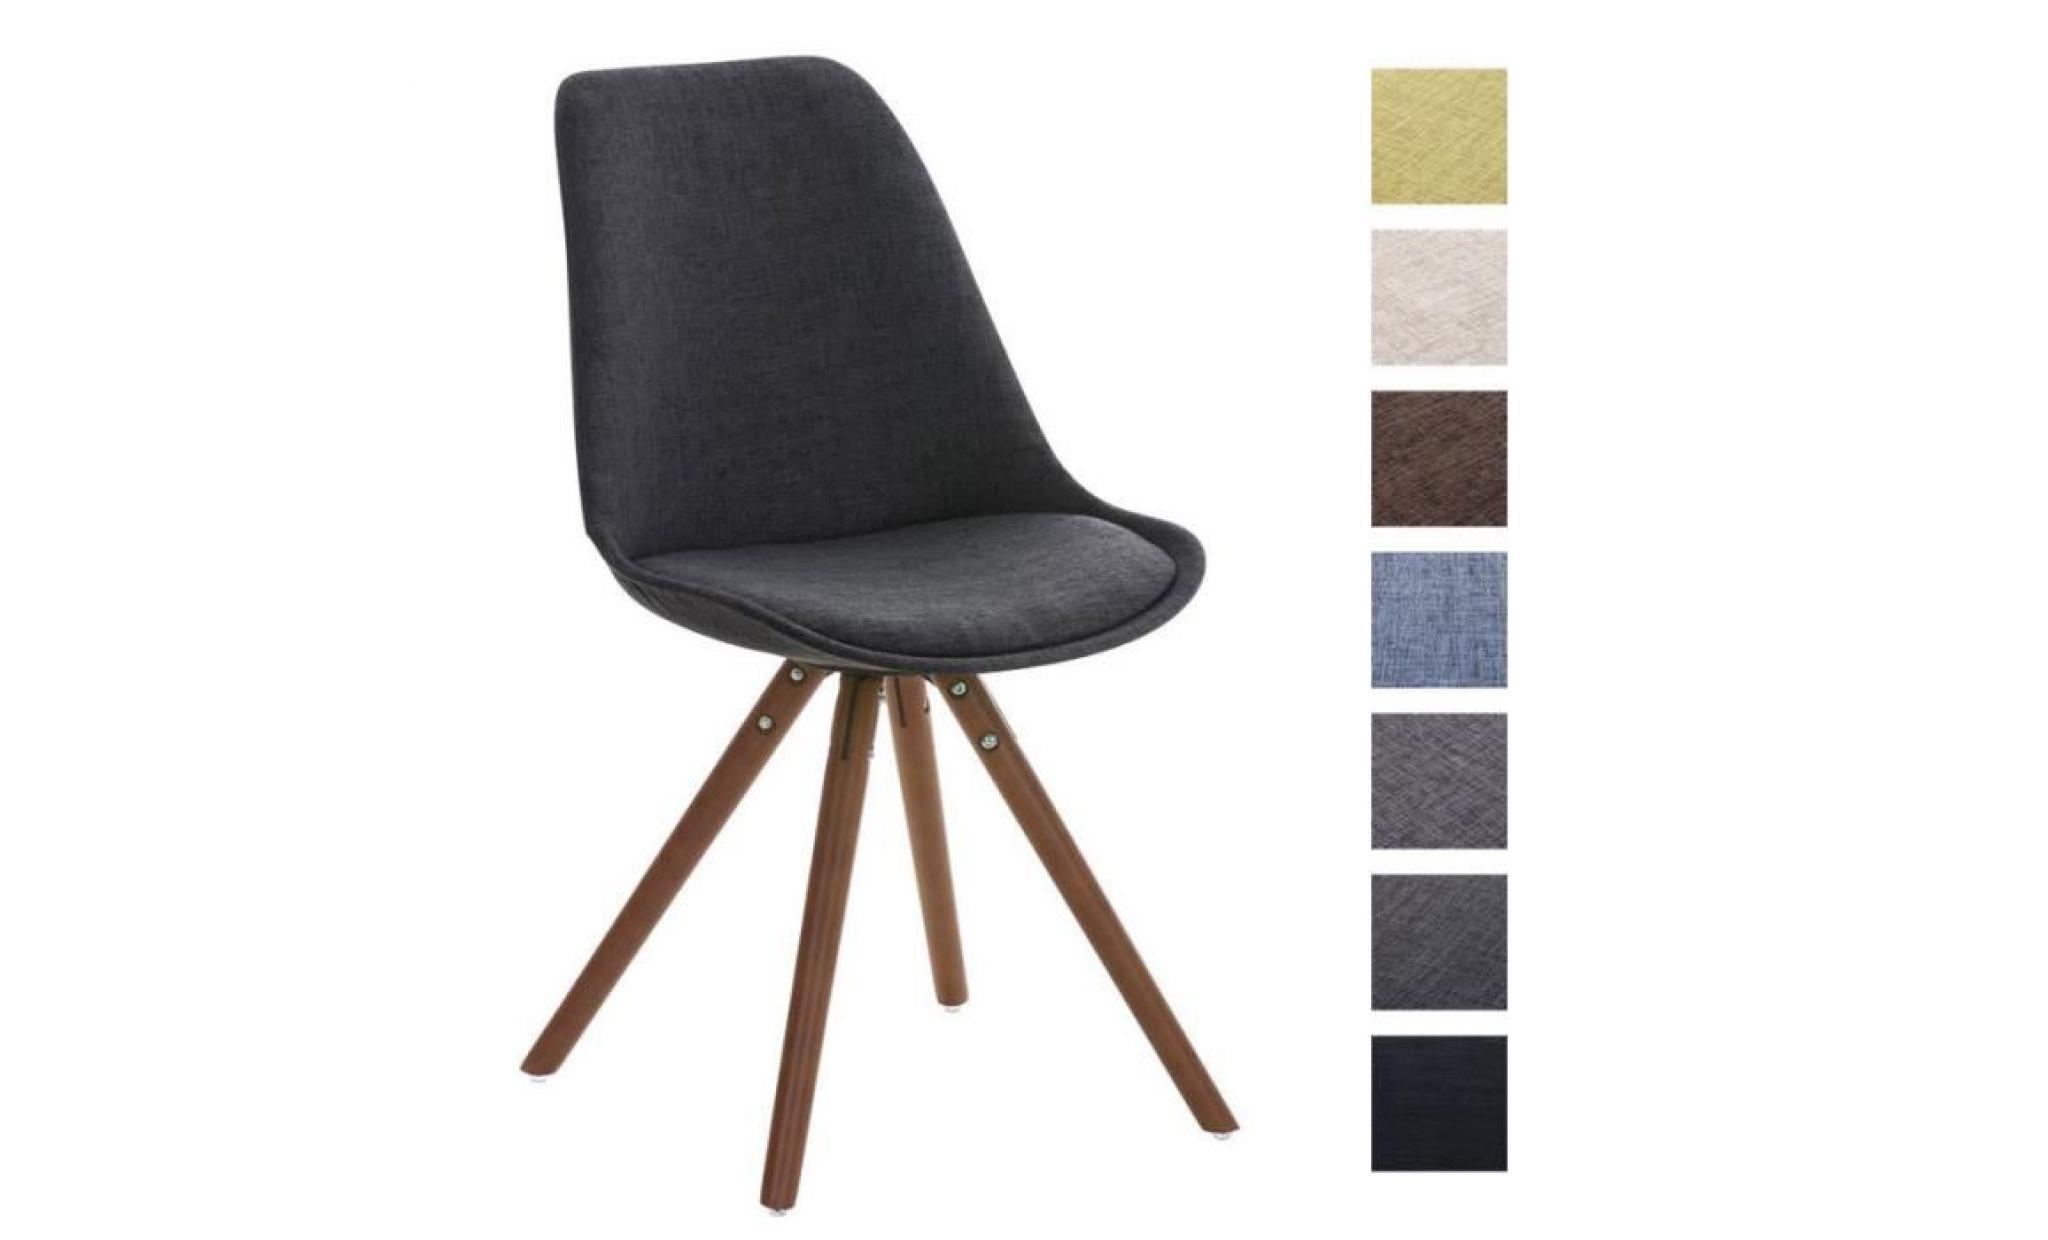 clp chaise retro pegleg piétement en bois couleur noix, revêtement en tissu, chaise de visiteur design, couleurs au choix